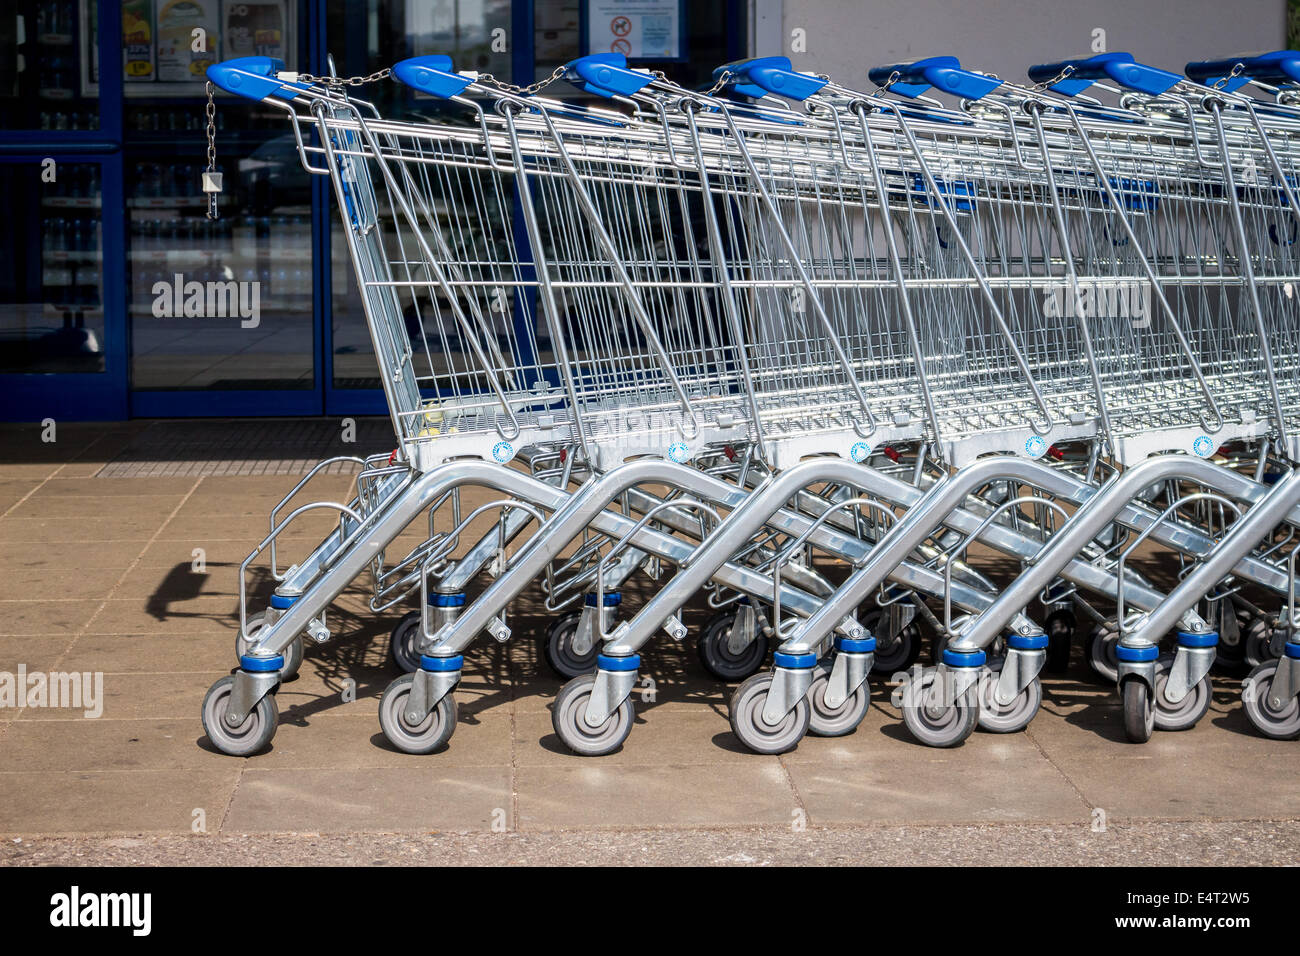 Before a supermarket stand shopping carts, Vor einem Supermarkt stehen Einkaufswagen Stock Photo